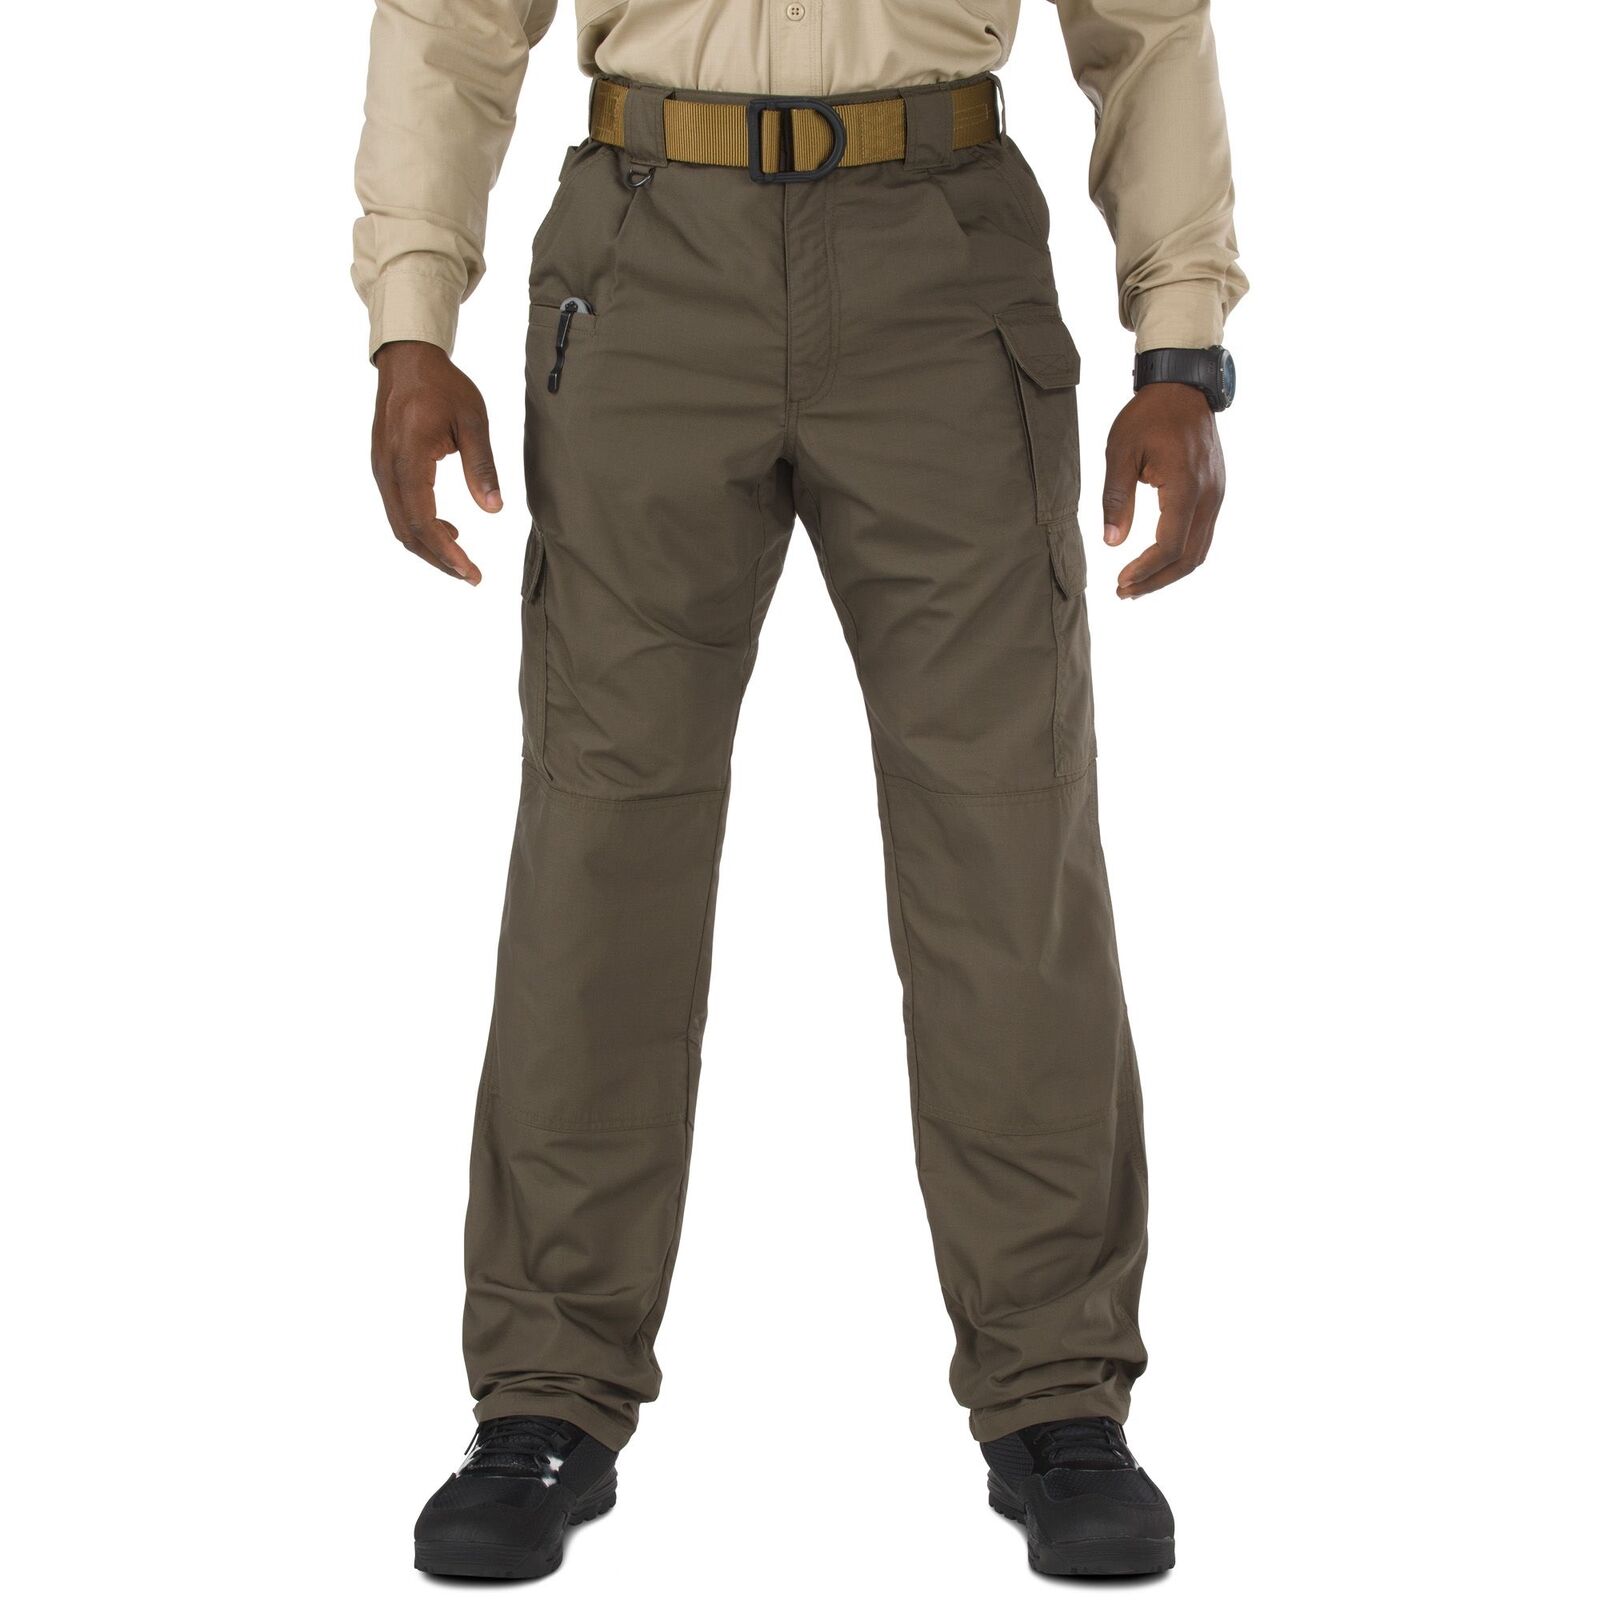 5.11 Tactical TacLite Pro Duty Pants Men's Tundra 30x32 74273 192 